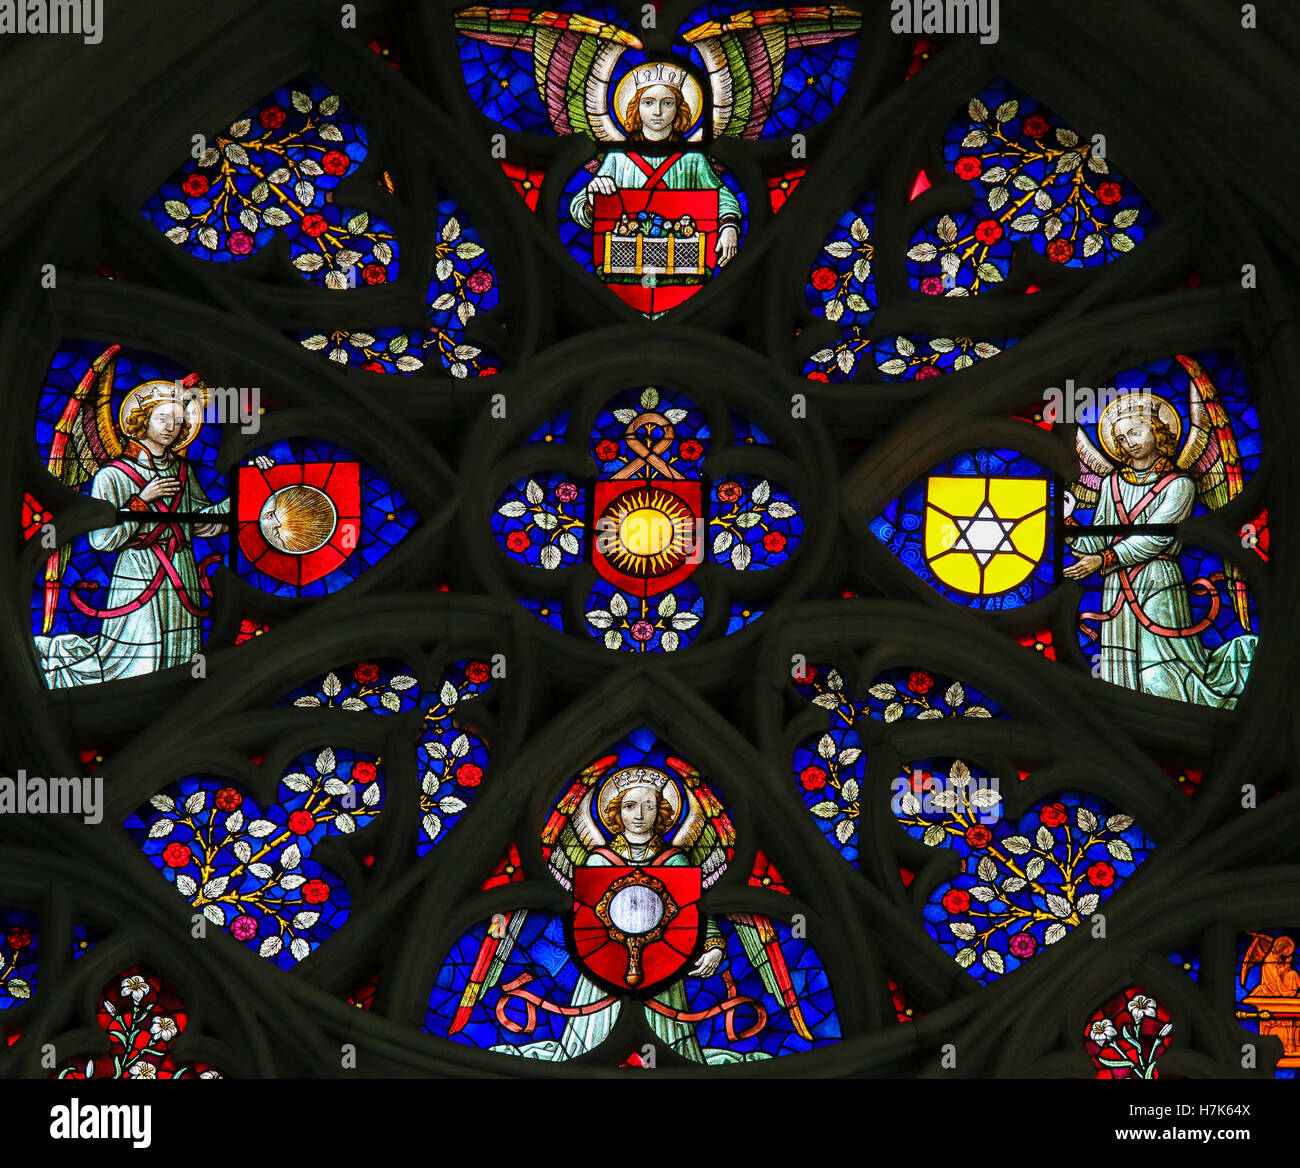 Runde Glasfenster Darstellung vier Engel, eine Sonne, Mond, Spiegel, Stern  und Blumen, in der Kathedrale von Mechelen, Belgien Stockfotografie - Alamy